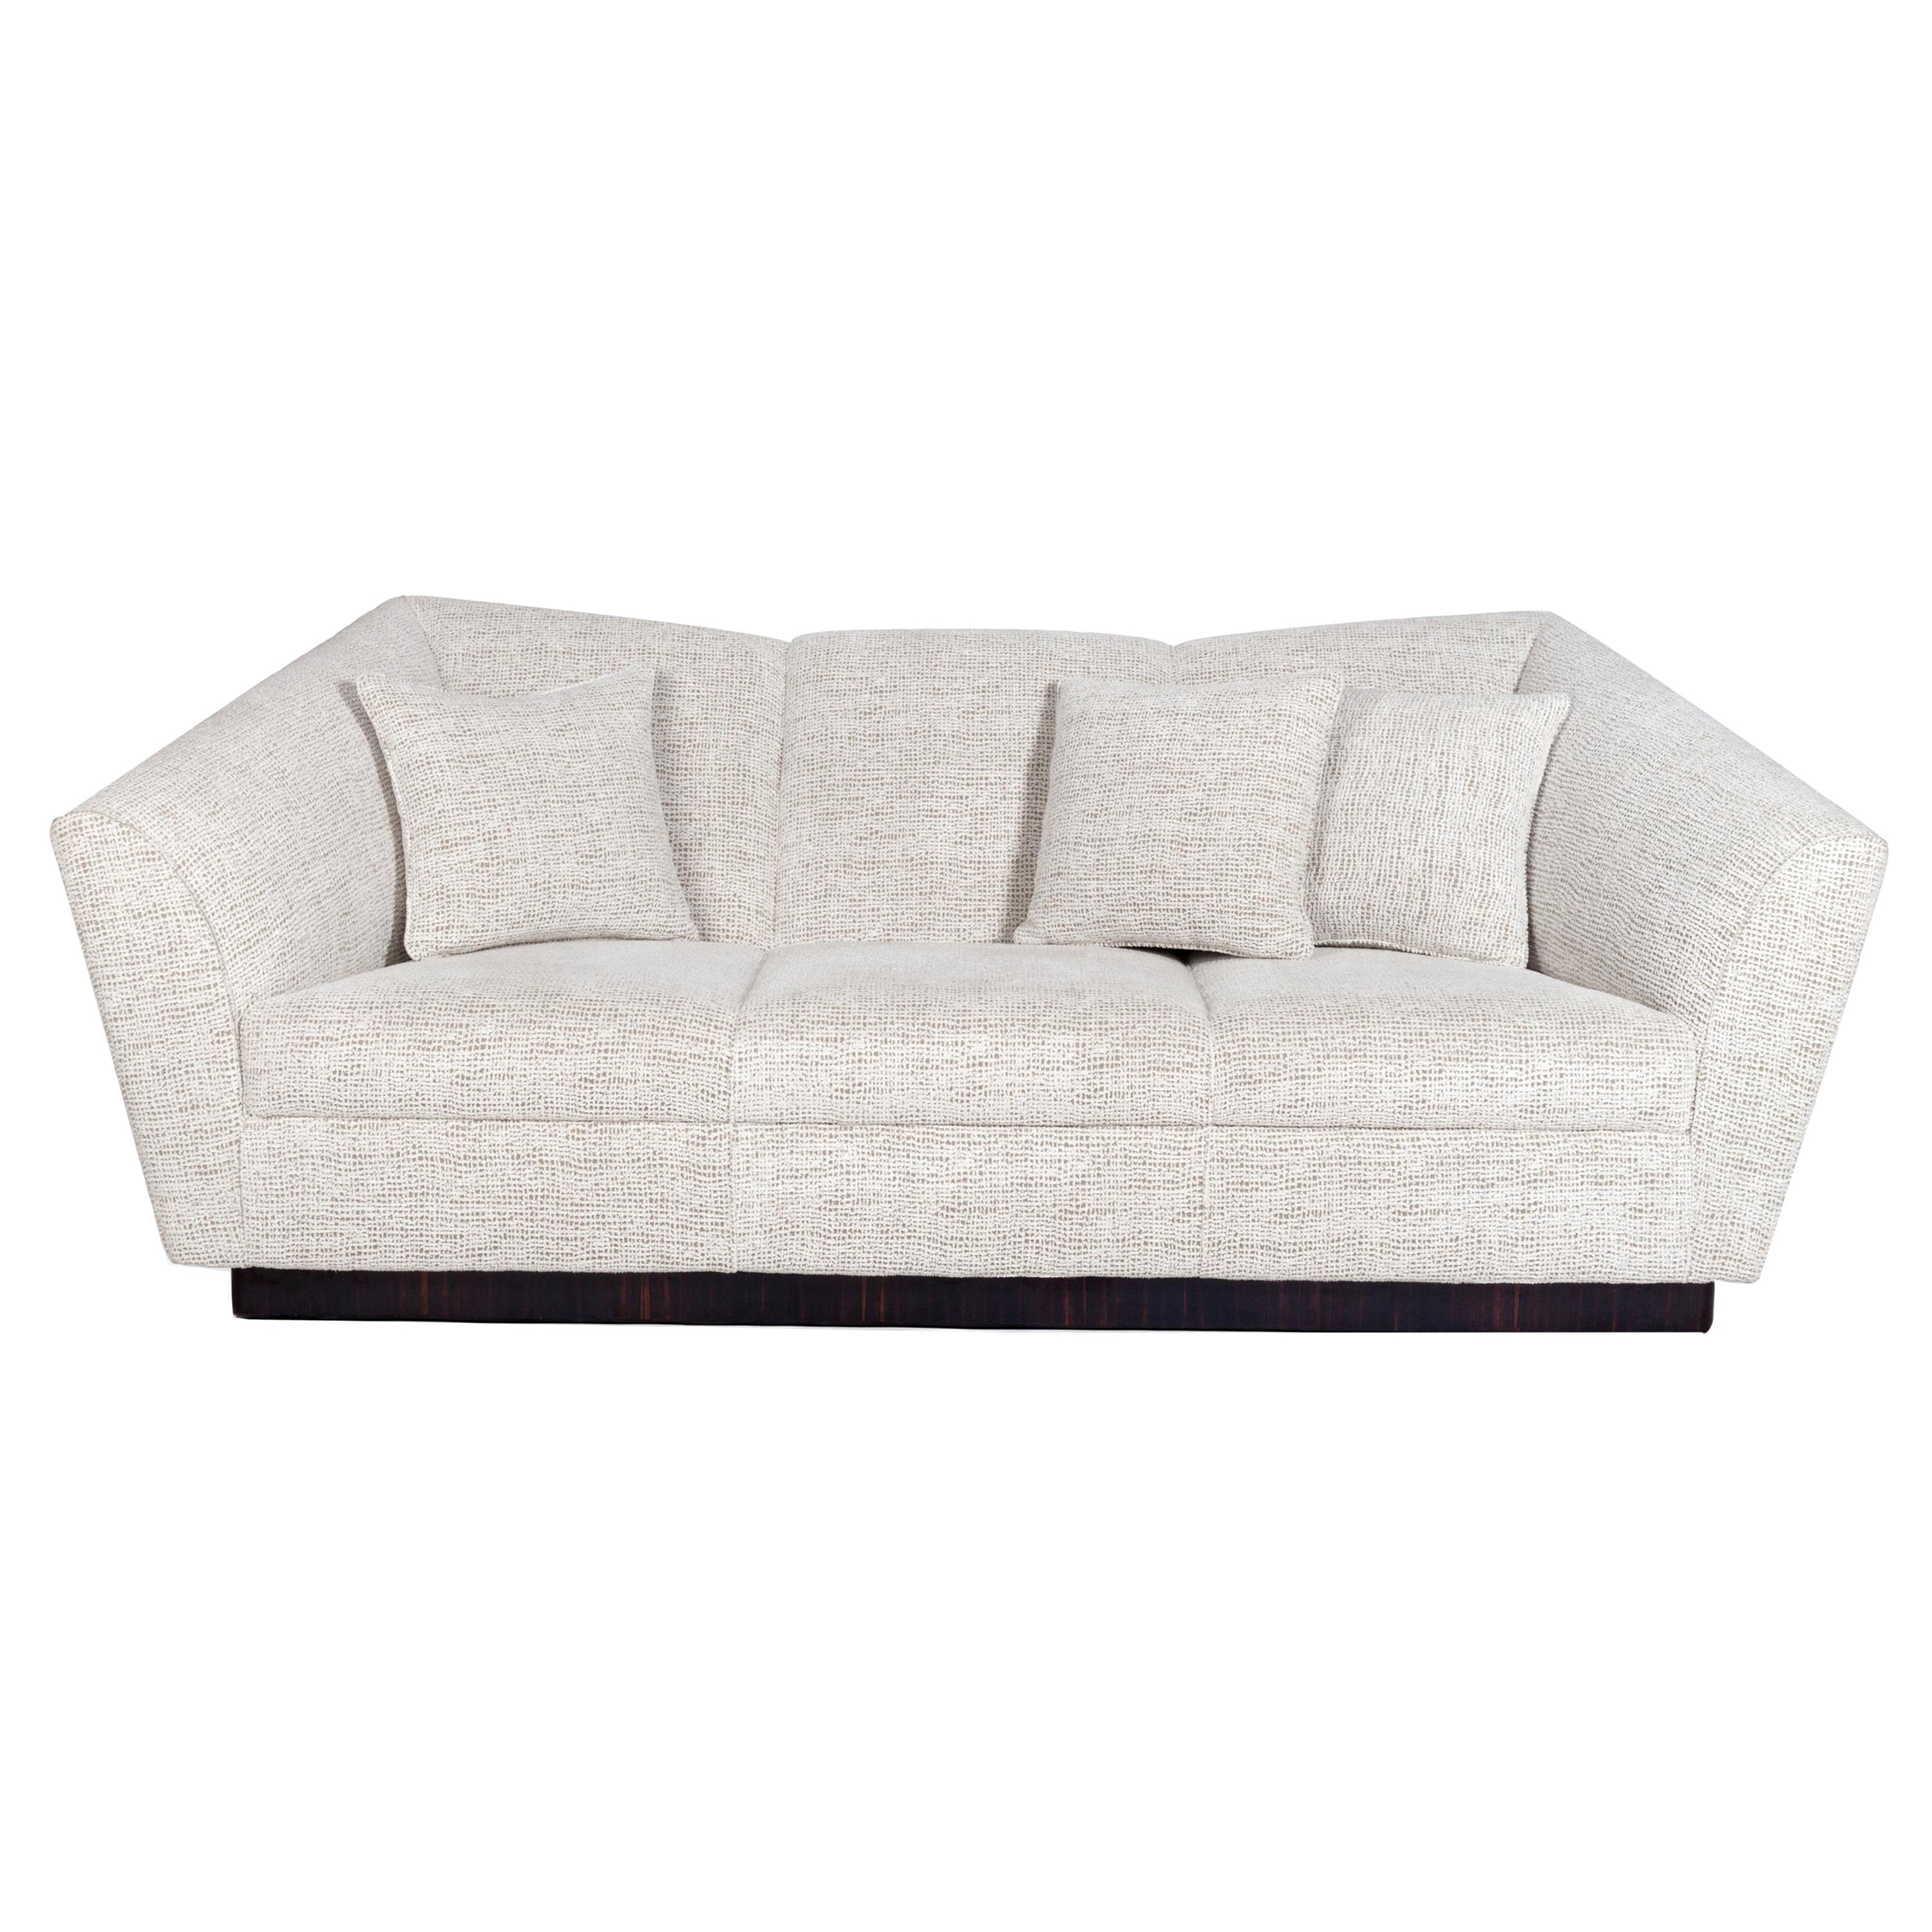 Eagle Three-Seat Sofa, Ebony & COM, InsidherLand by Joana Santos Barbosa